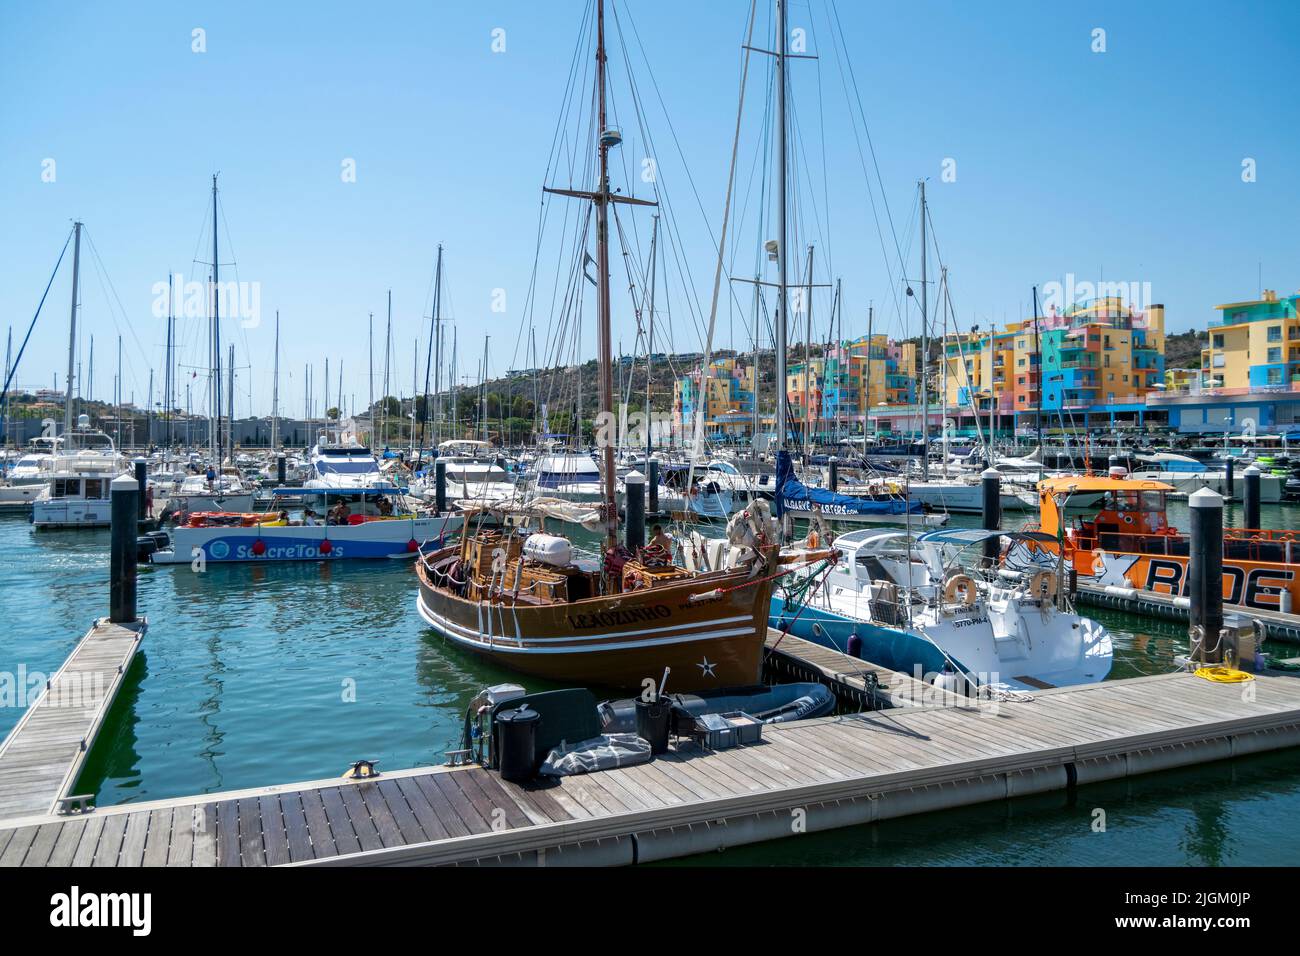 Marina de Albufeira en Algarve, Portugal del Sur. Barcos estacionados. Barcos en el agua. Actividades náuticas. Portugal y el turismo. Foto de stock